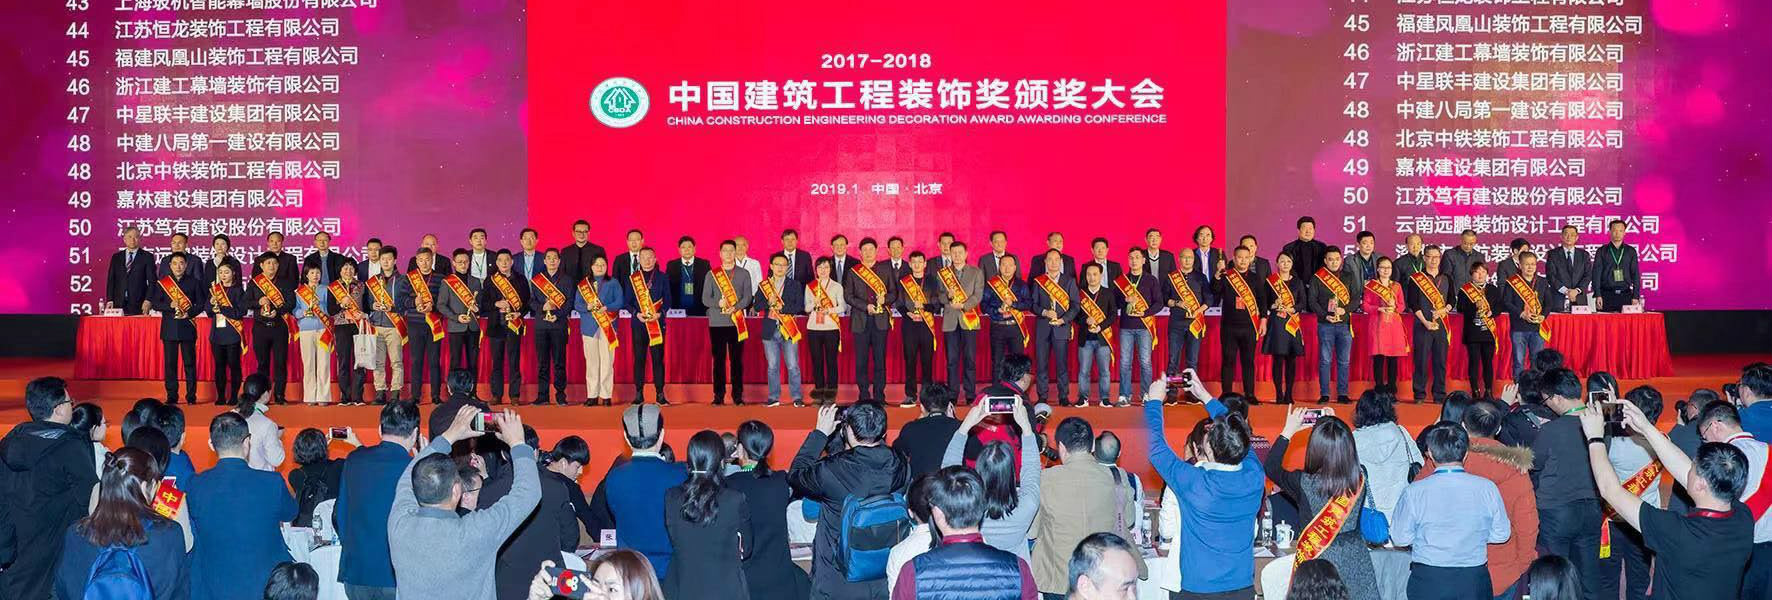 热烈祝贺合肥澳达环境艺术设计工程有限公司参加“2017-2018年度中国建筑工程装饰奖颁奖大会”